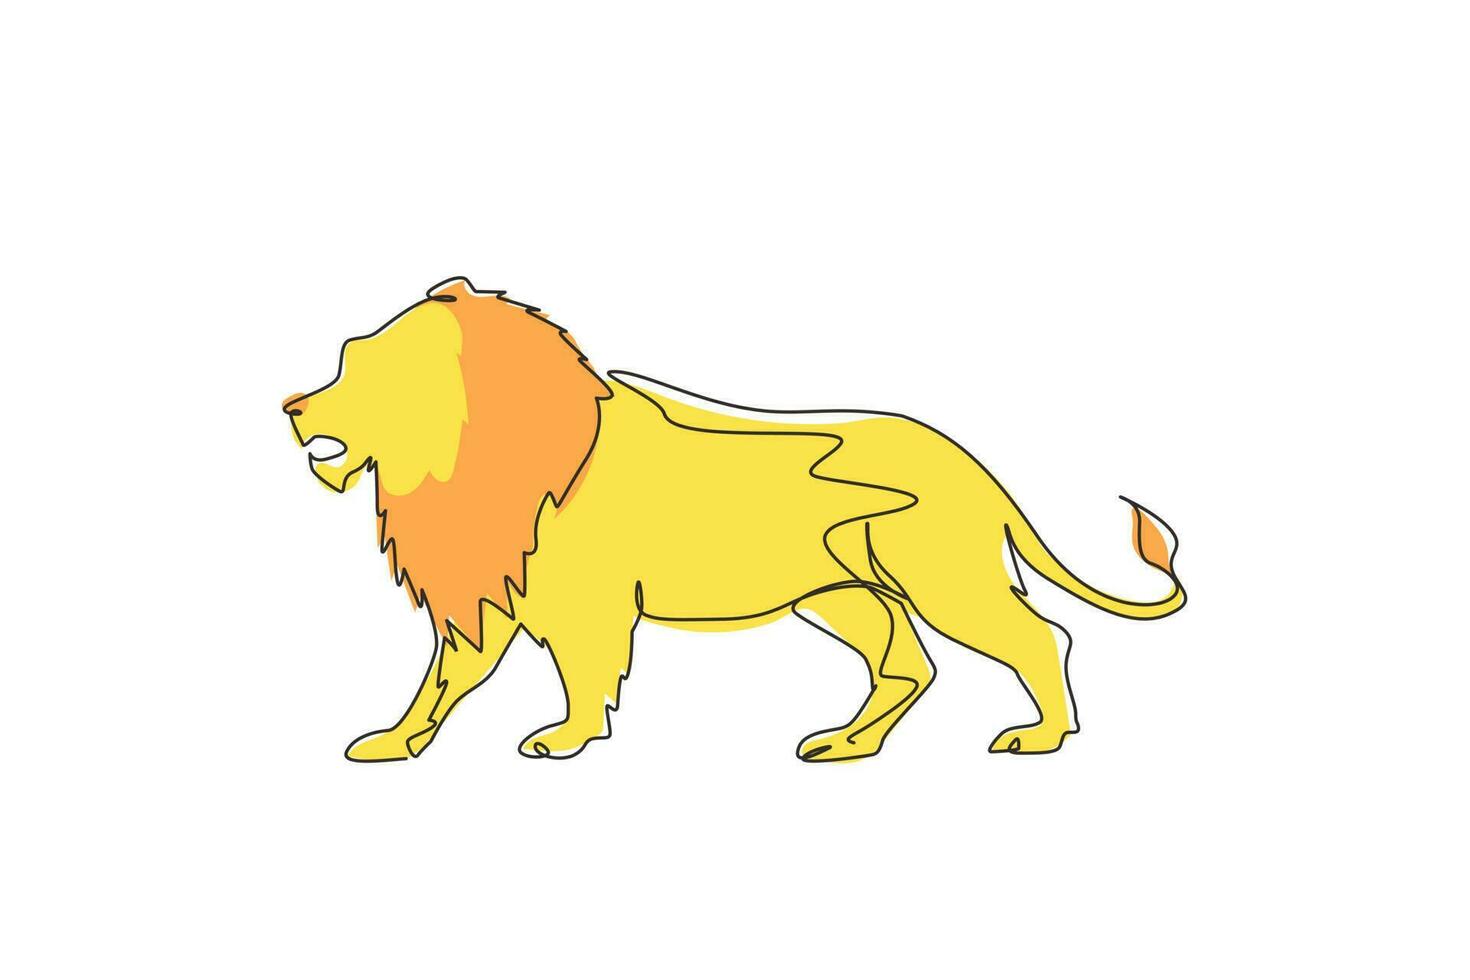 enkele doorlopende lijntekening sterke leeuw staande full body, koning van de jungle. sterke katachtige zoogdiermascotte. gevaarlijk dierlijk logo voor grote katten. dynamische één lijn trekken grafisch ontwerp vectorillustratie vector